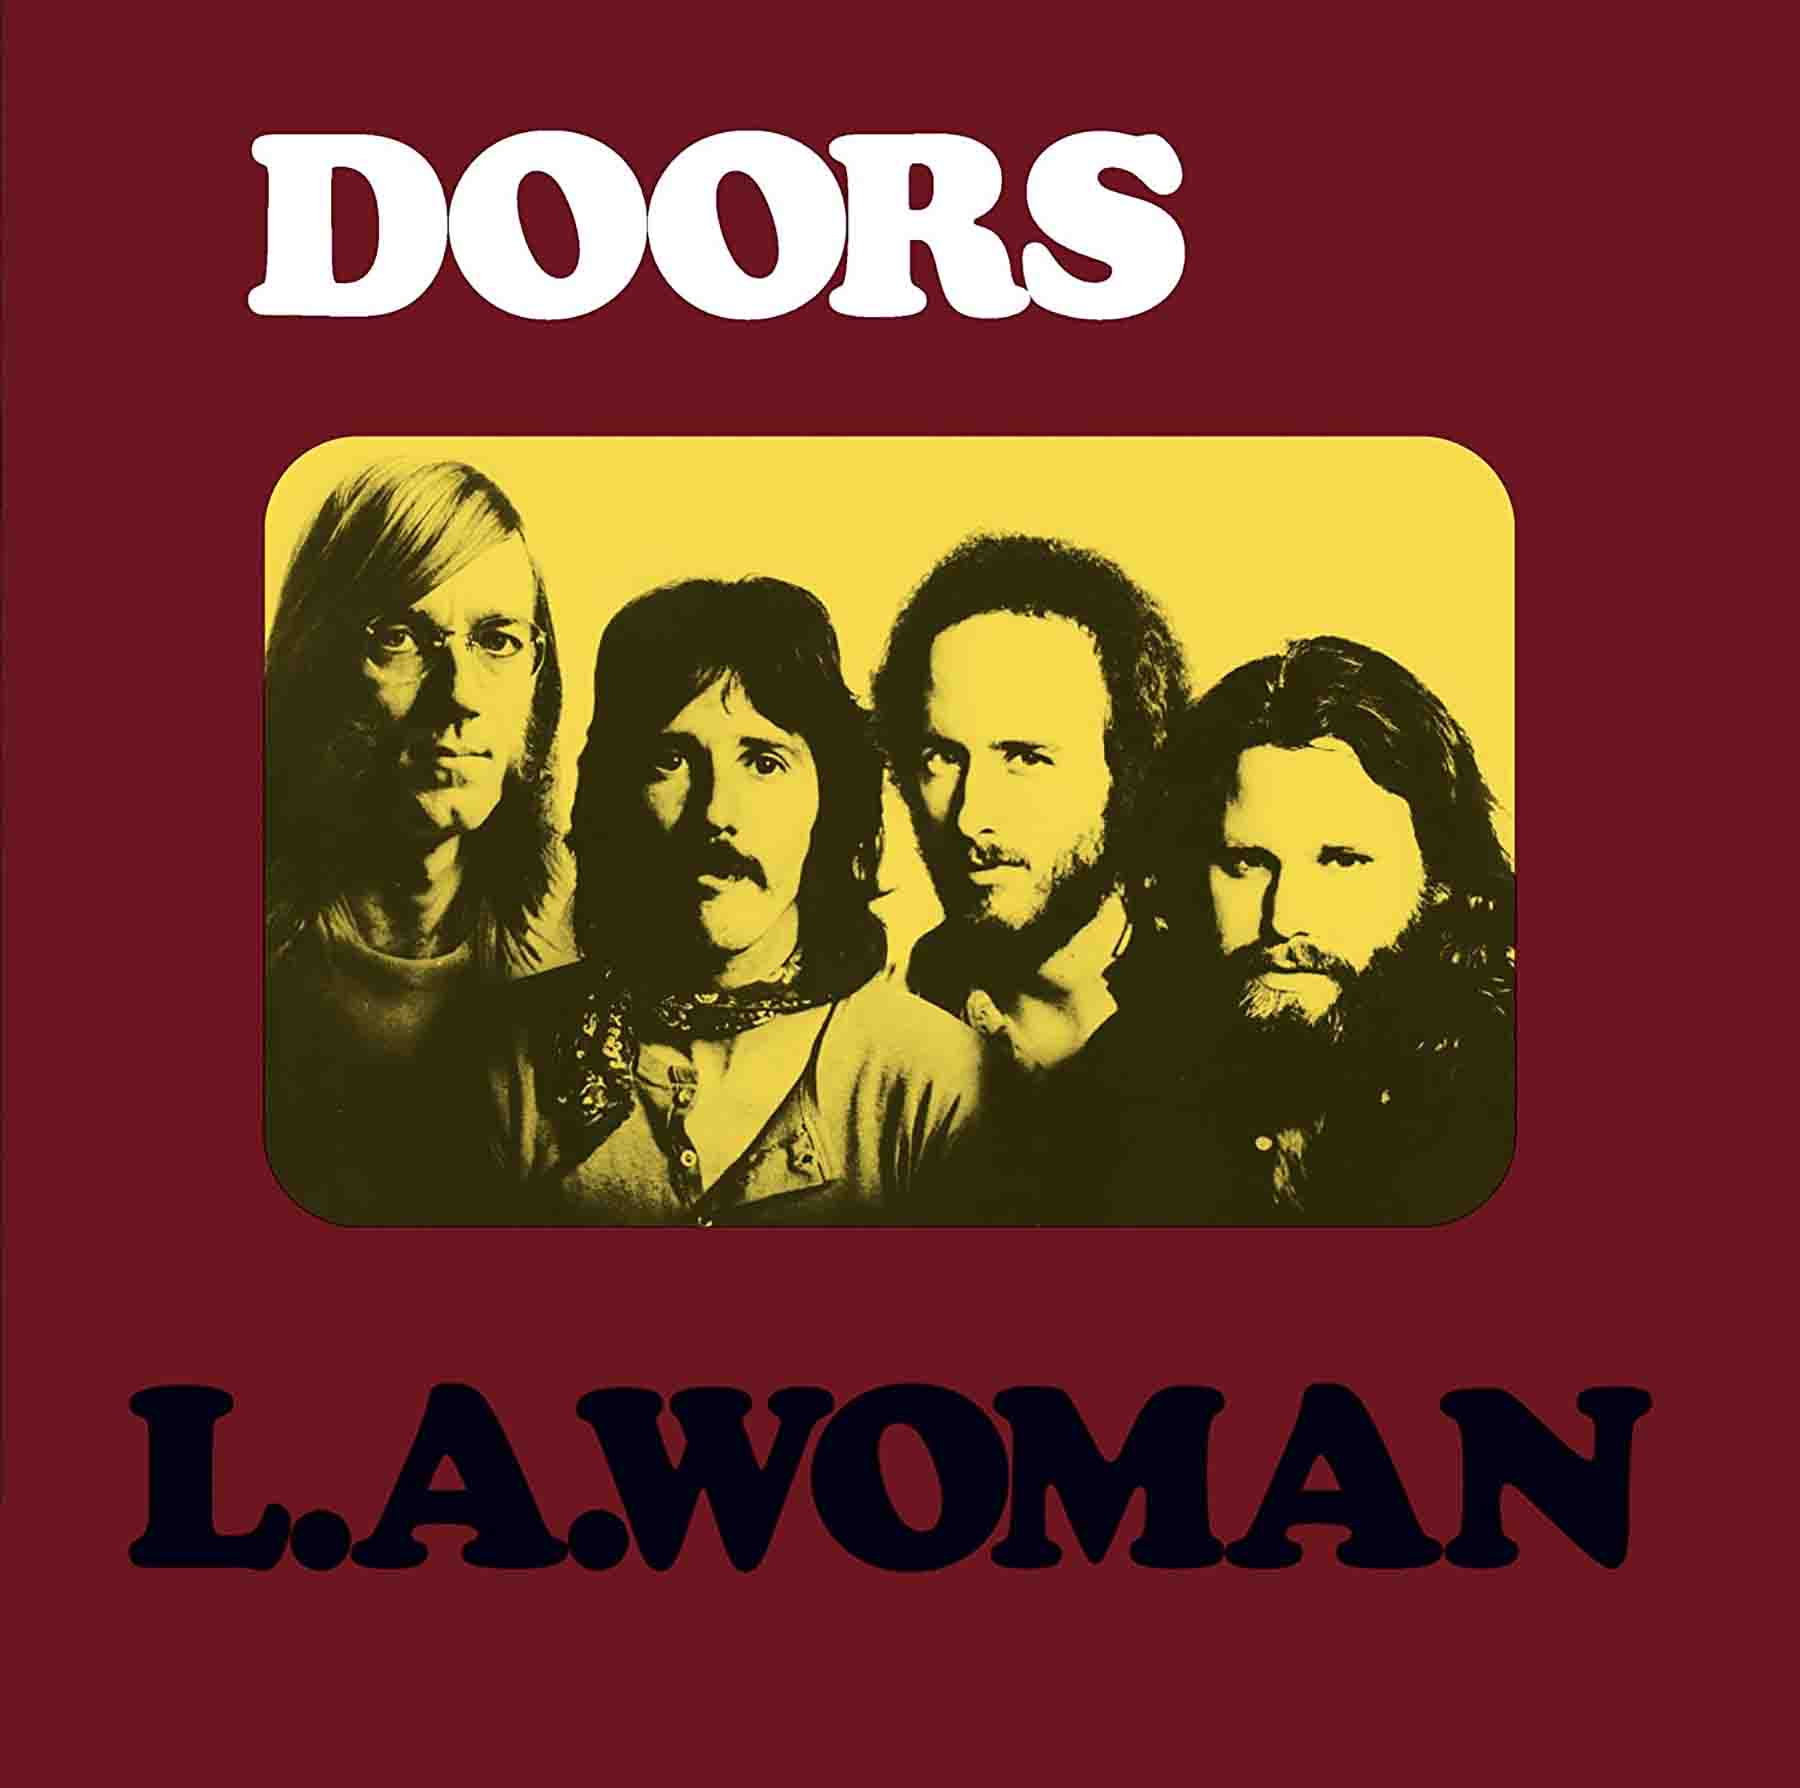 The Doors, L.A. Woman